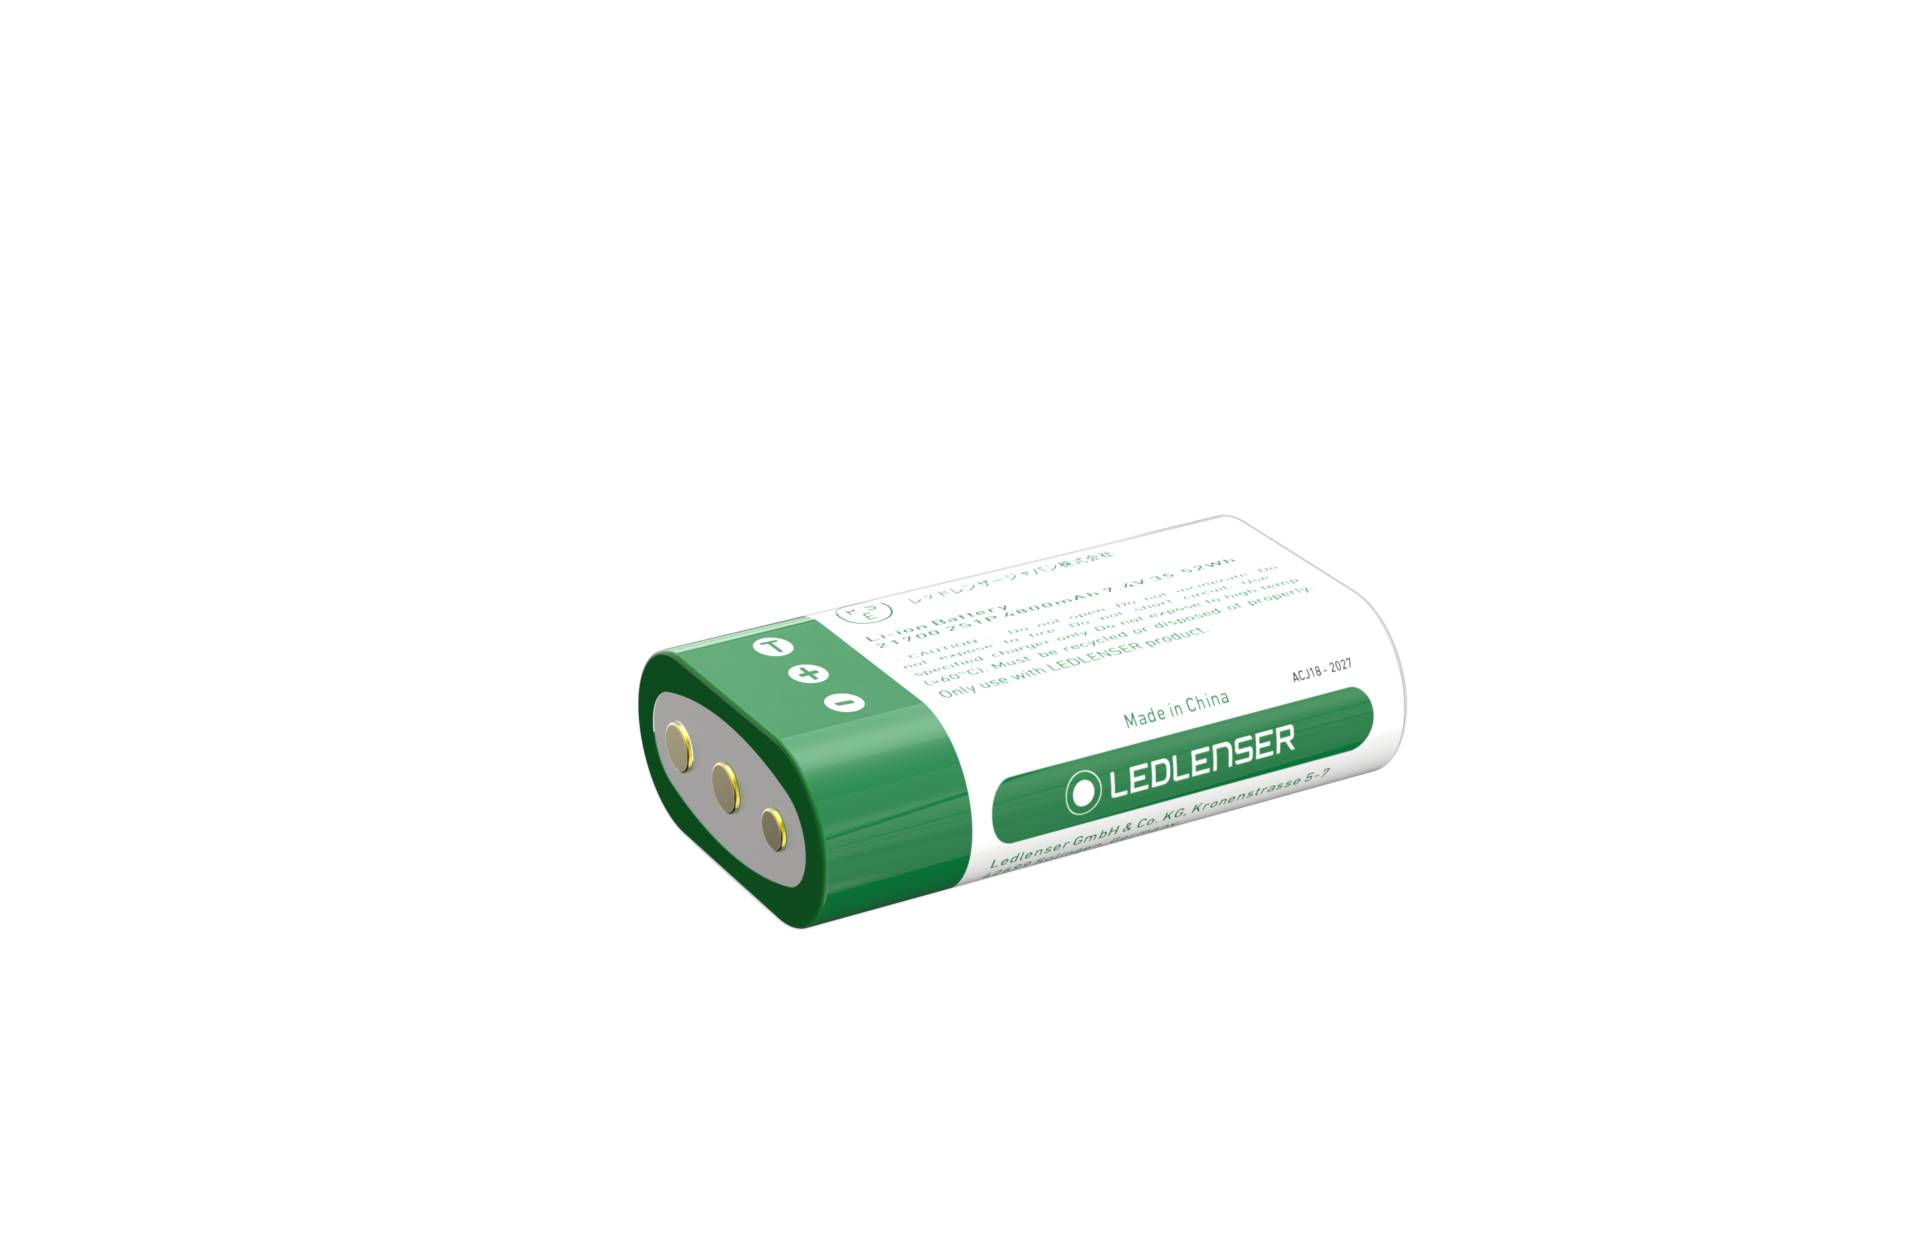 Ledlenser 2x 21700 Li-ion Rechargeable Battery Pack - Li-ion Akku von Ledlenser GmbH & Co Kg